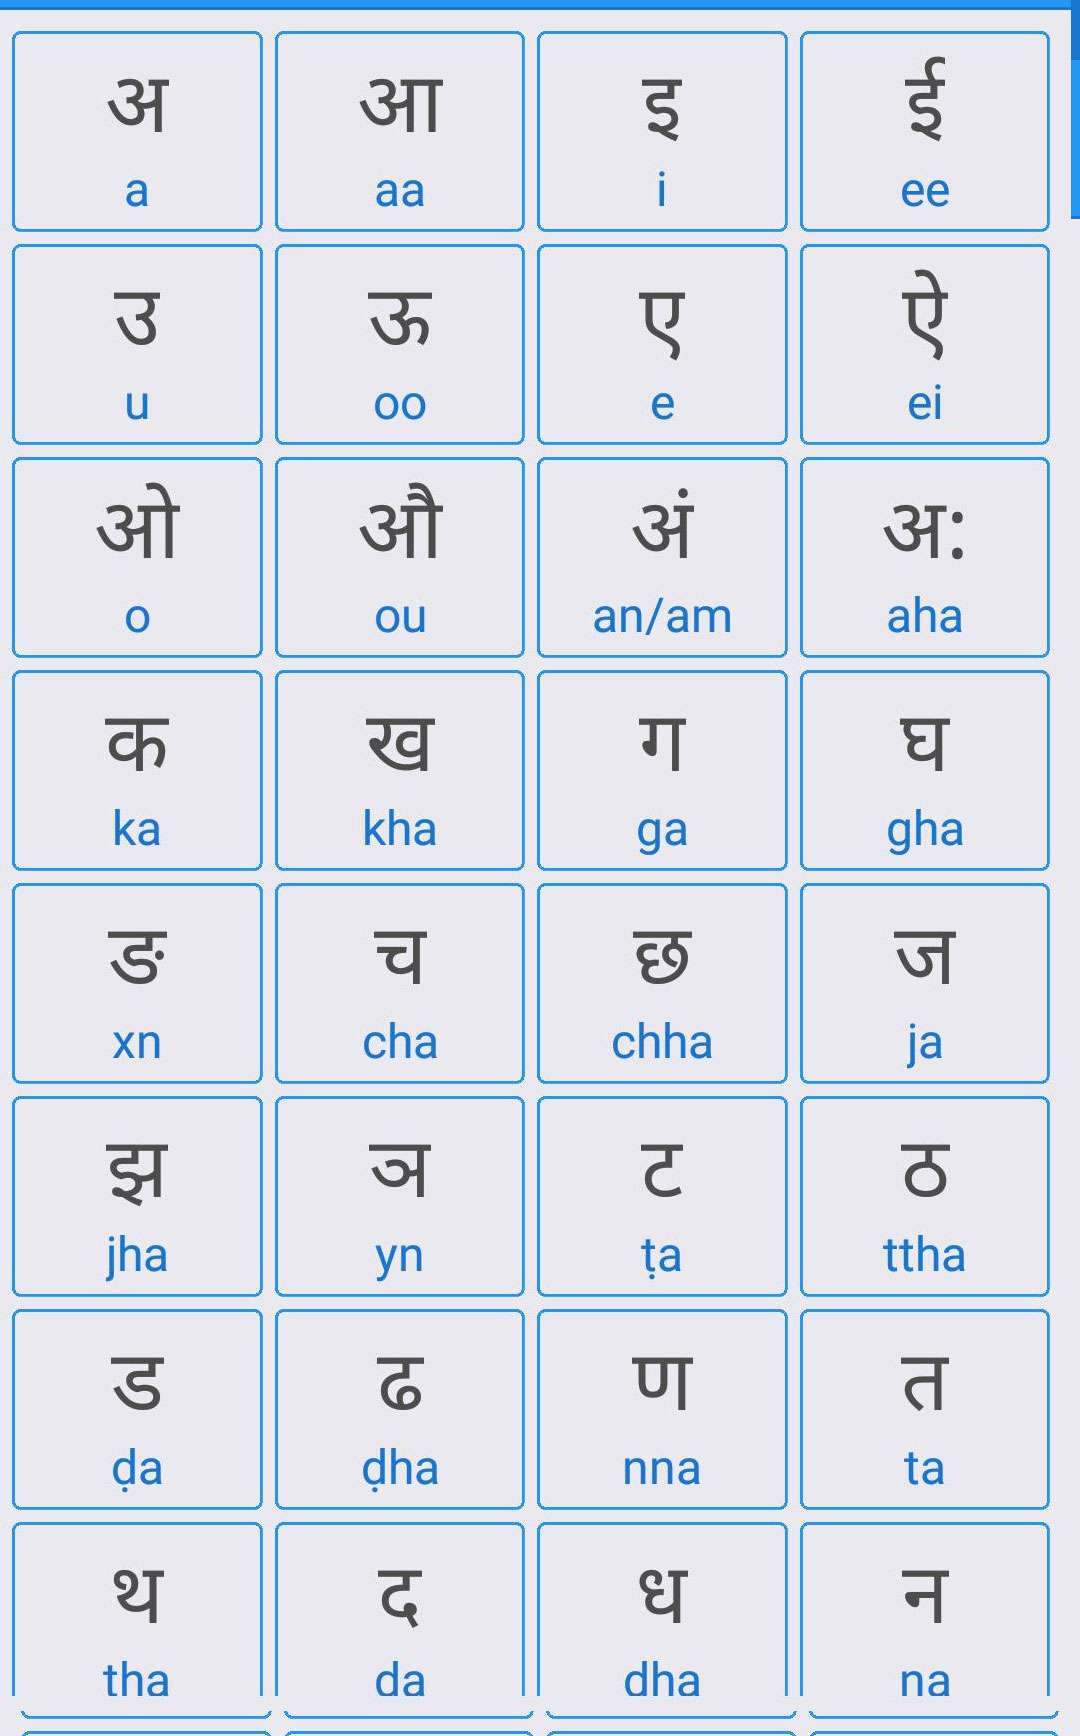 Phương ngữ tiếng Hindi được sử dụng phổ biến